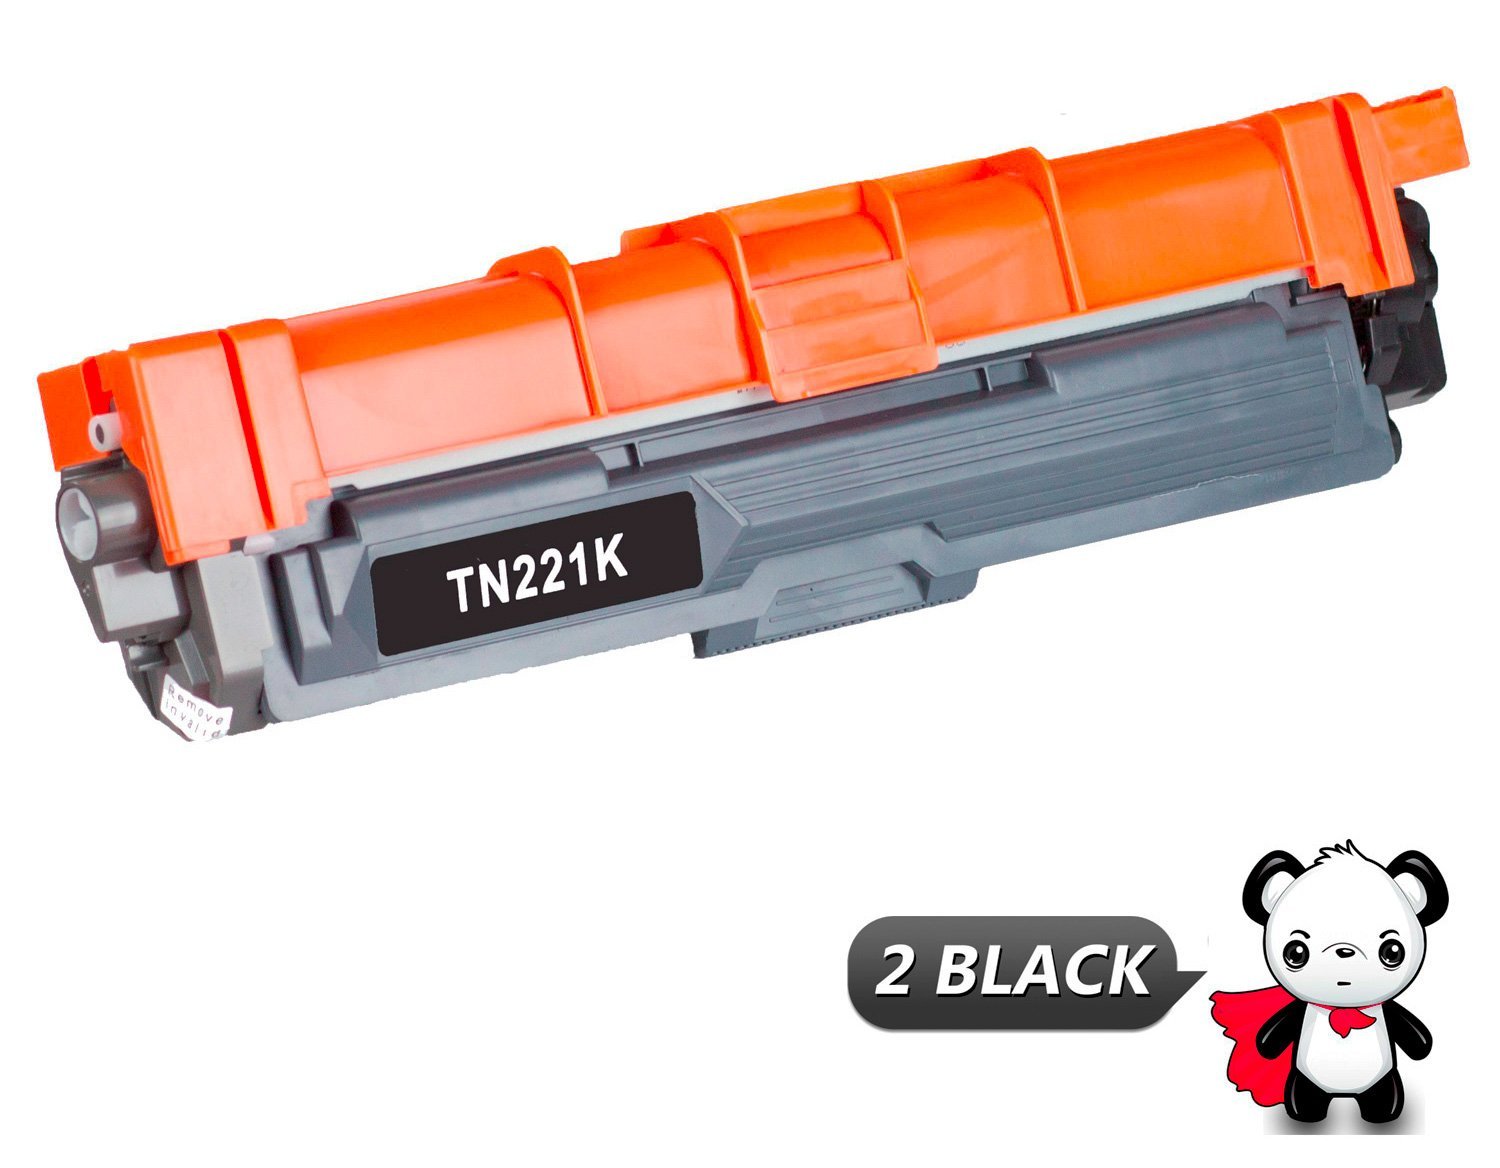 Brother TN221BK Toner - Shop More Affordable Compatible Cartridges